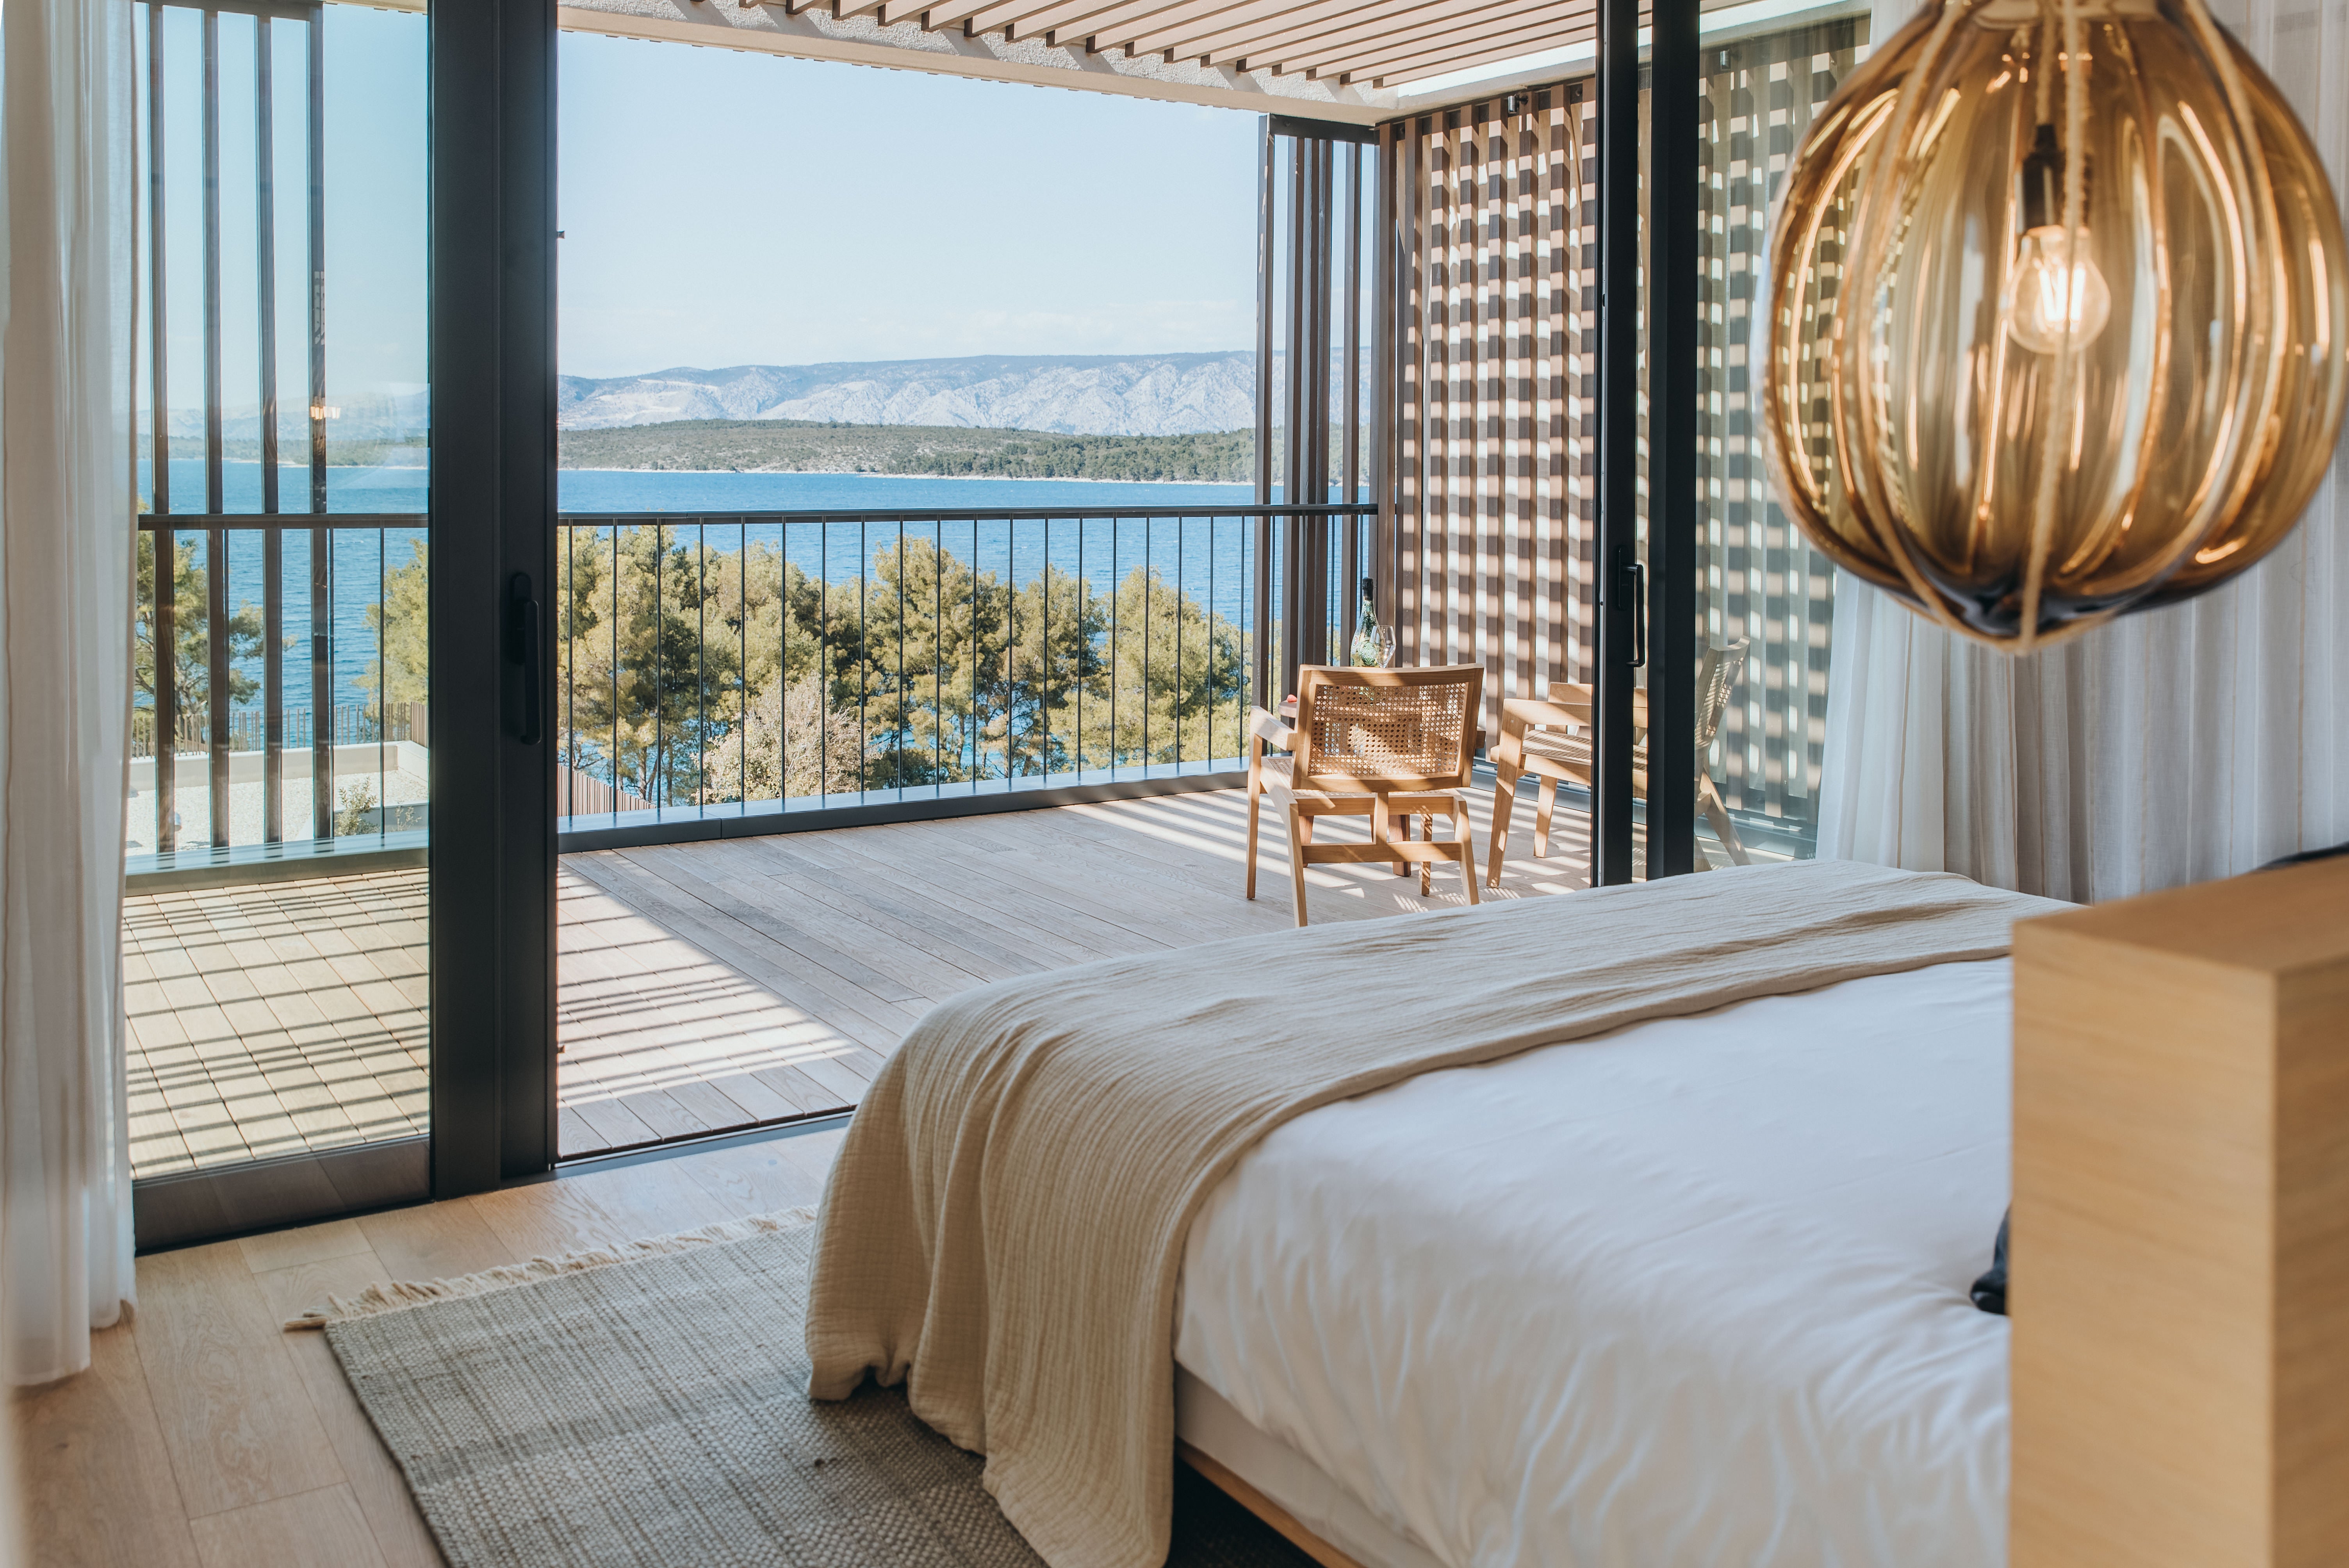 The Panoramic Suite at Maslina Resort, Croatia